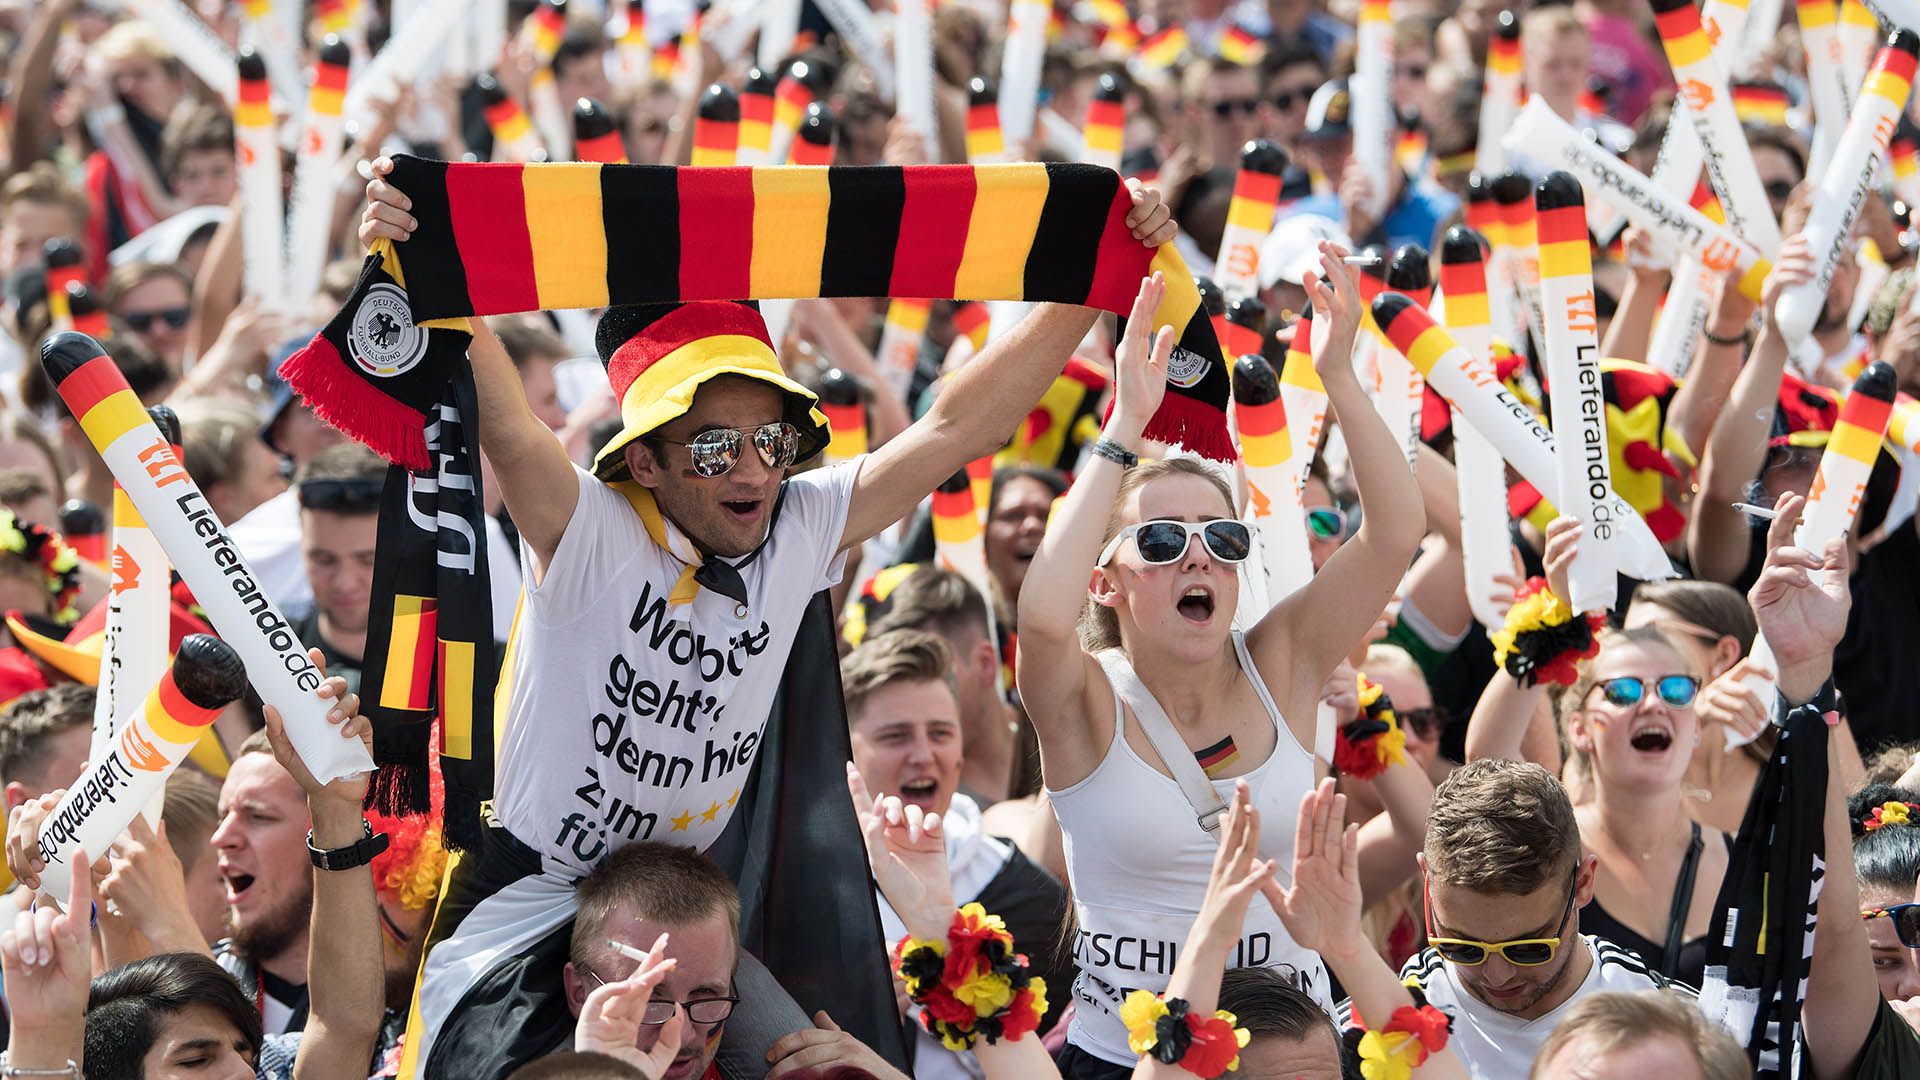 Archivbild: Besucher verfolgen auf der Berliner Fanmeile zur Fußball-Weltmeisterschaft das Spiel Deutschland gegen Südkorea. (Quelle: dpa/Jutrczenka)